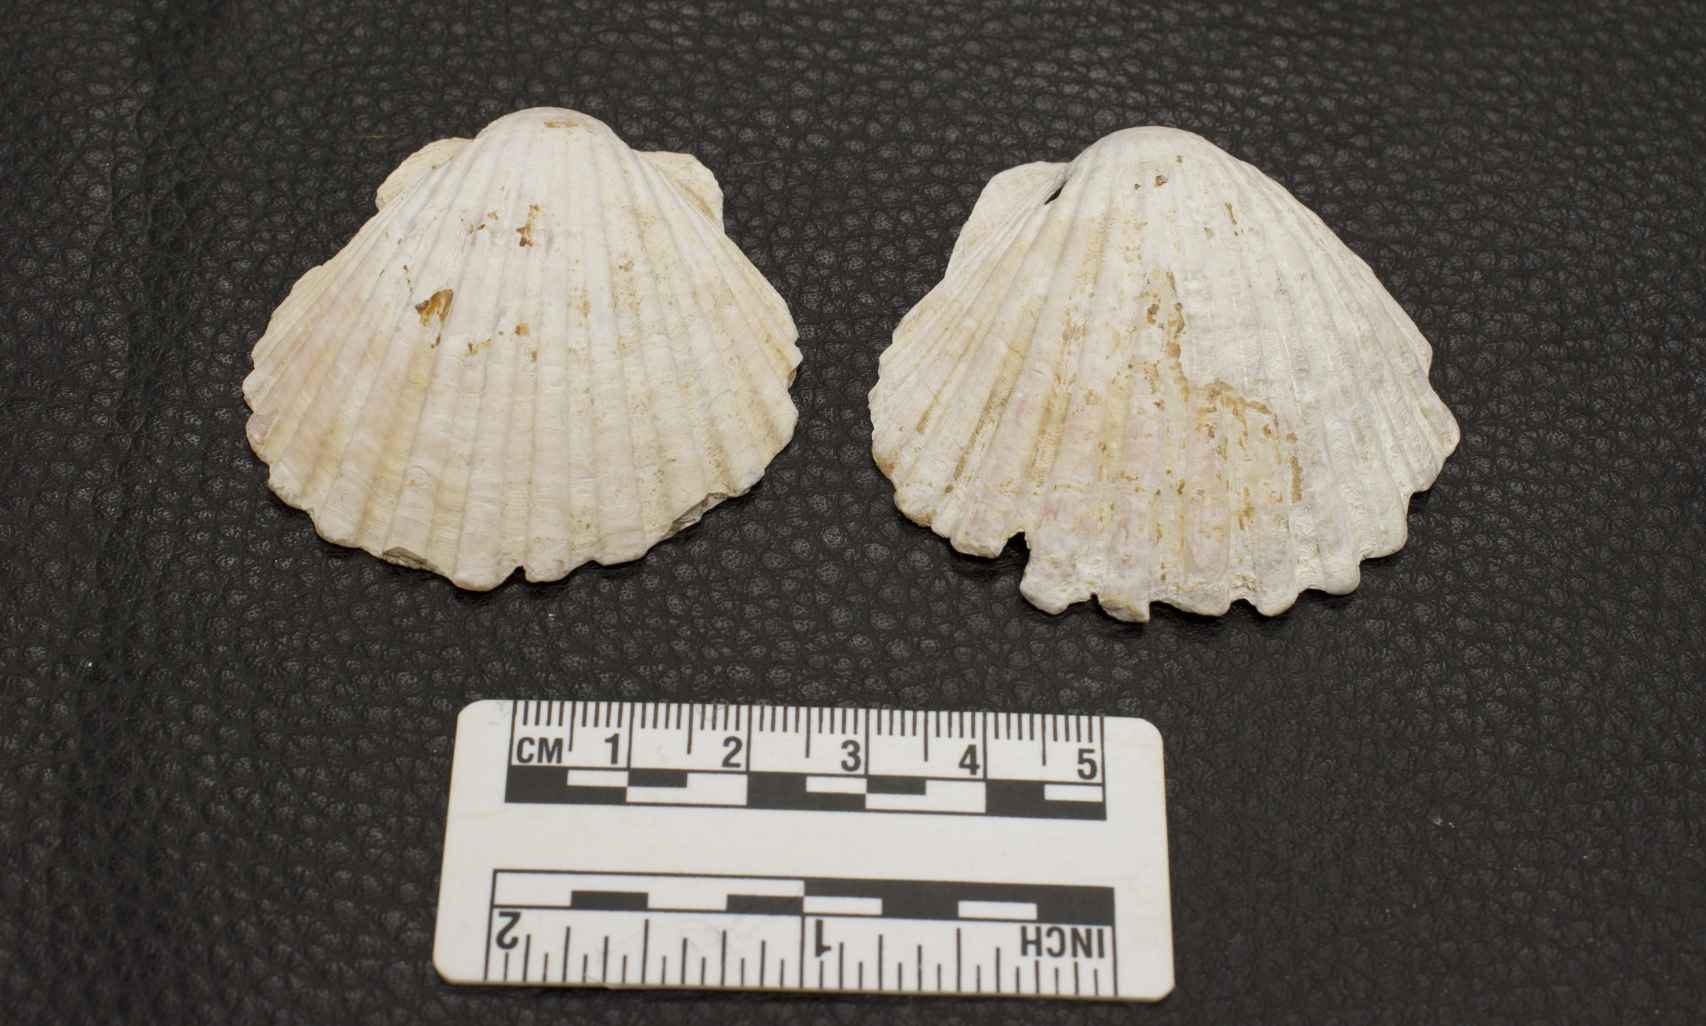 Dos conchas de vieira halladas en tumbas de peregrinos medievales.